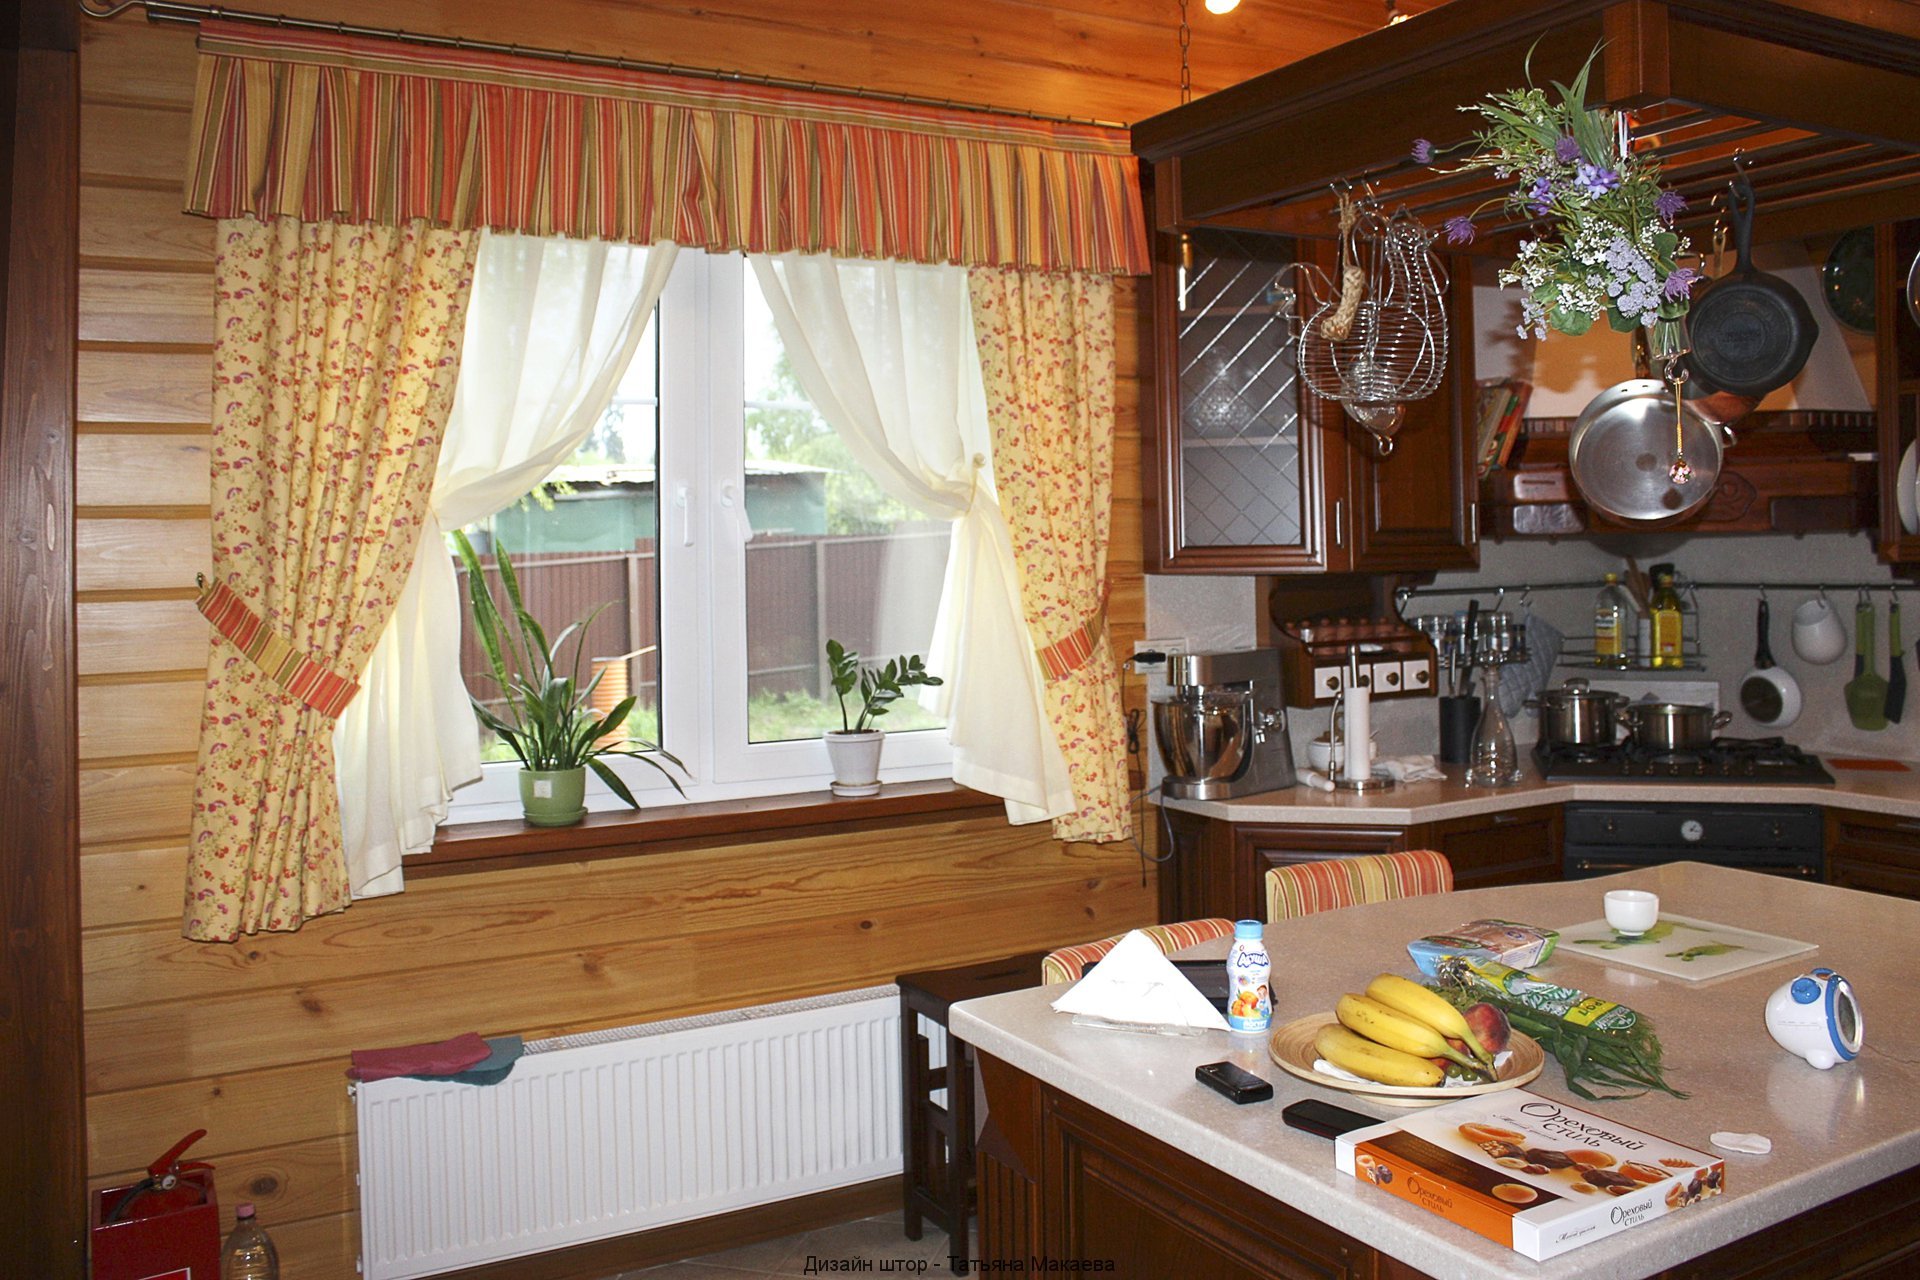 Оформление окна на кухне: шторы или жалюзи? | Статьи интернет-магазина  Karniz.ru